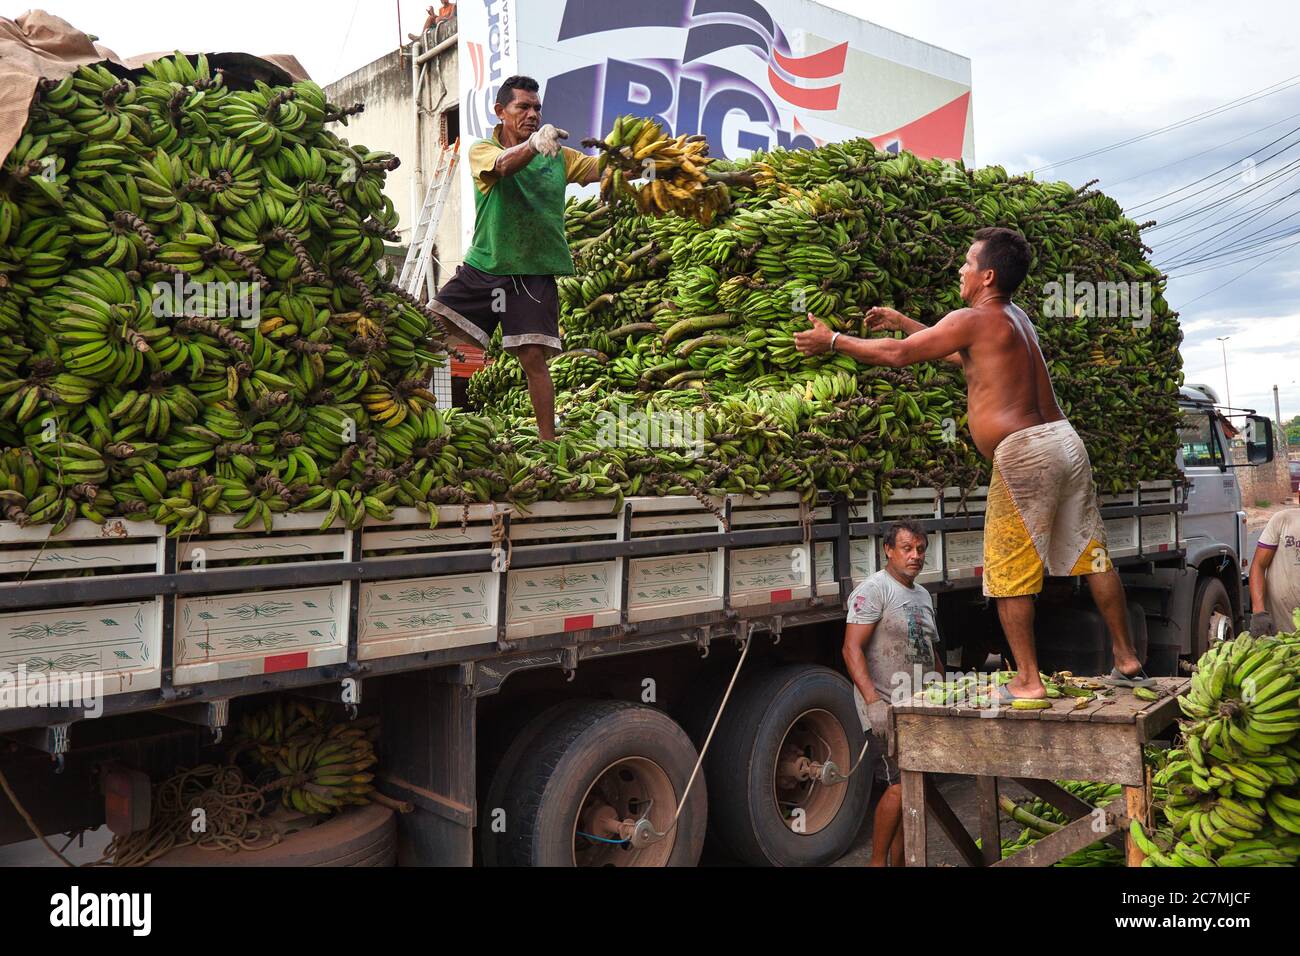 L'uomo lancia un grosso grappolo di banane fino a un altro uomo che le carica sul posto su un camion, al mercato di Manaus, Stato amazzonico, Brasile Foto Stock